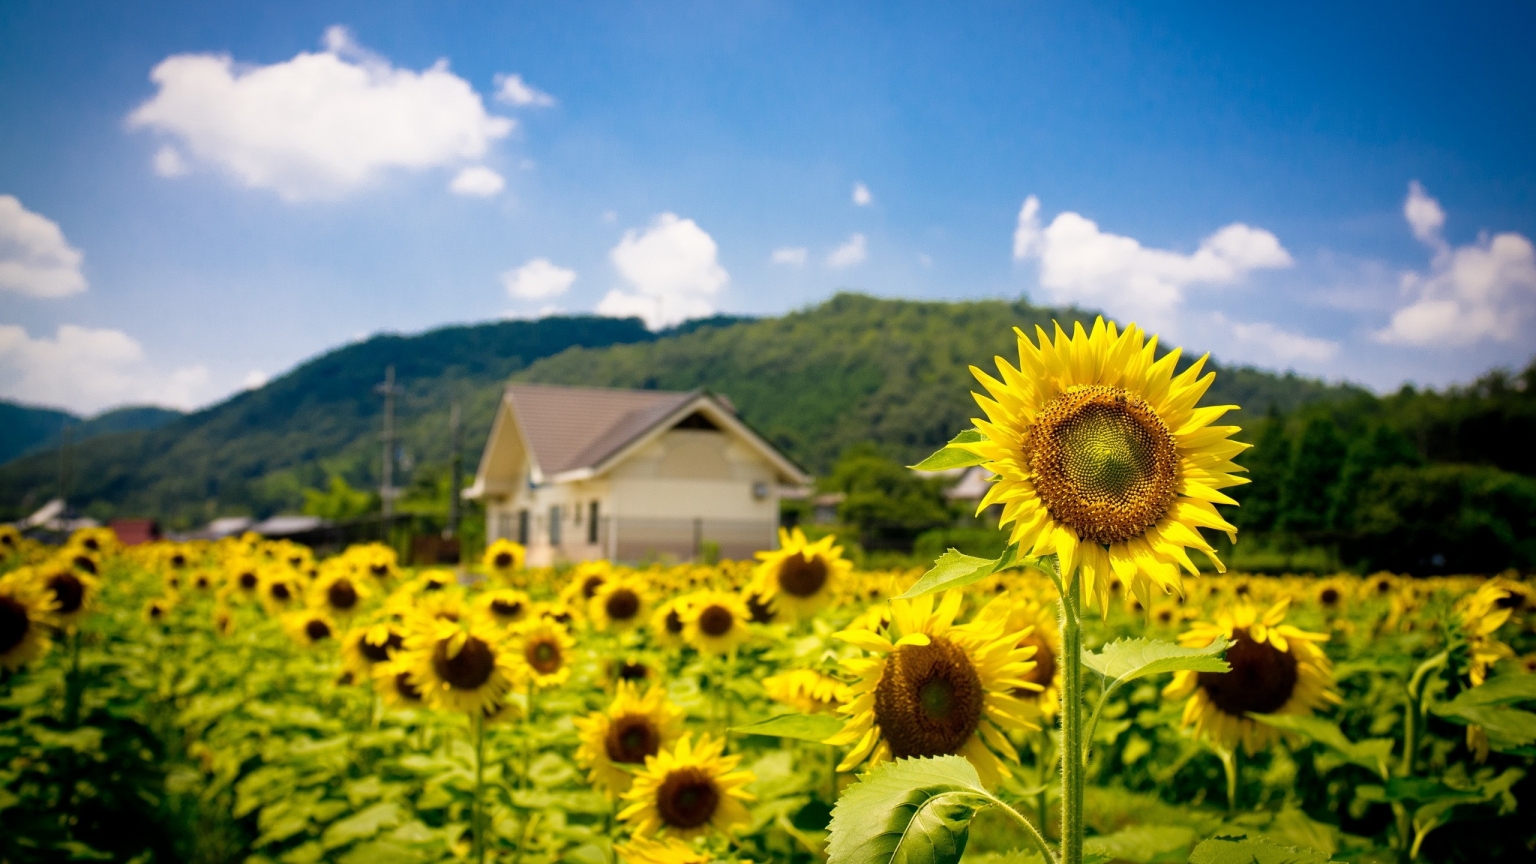 Sunflower Land for 1536 x 864 HDTV resolution